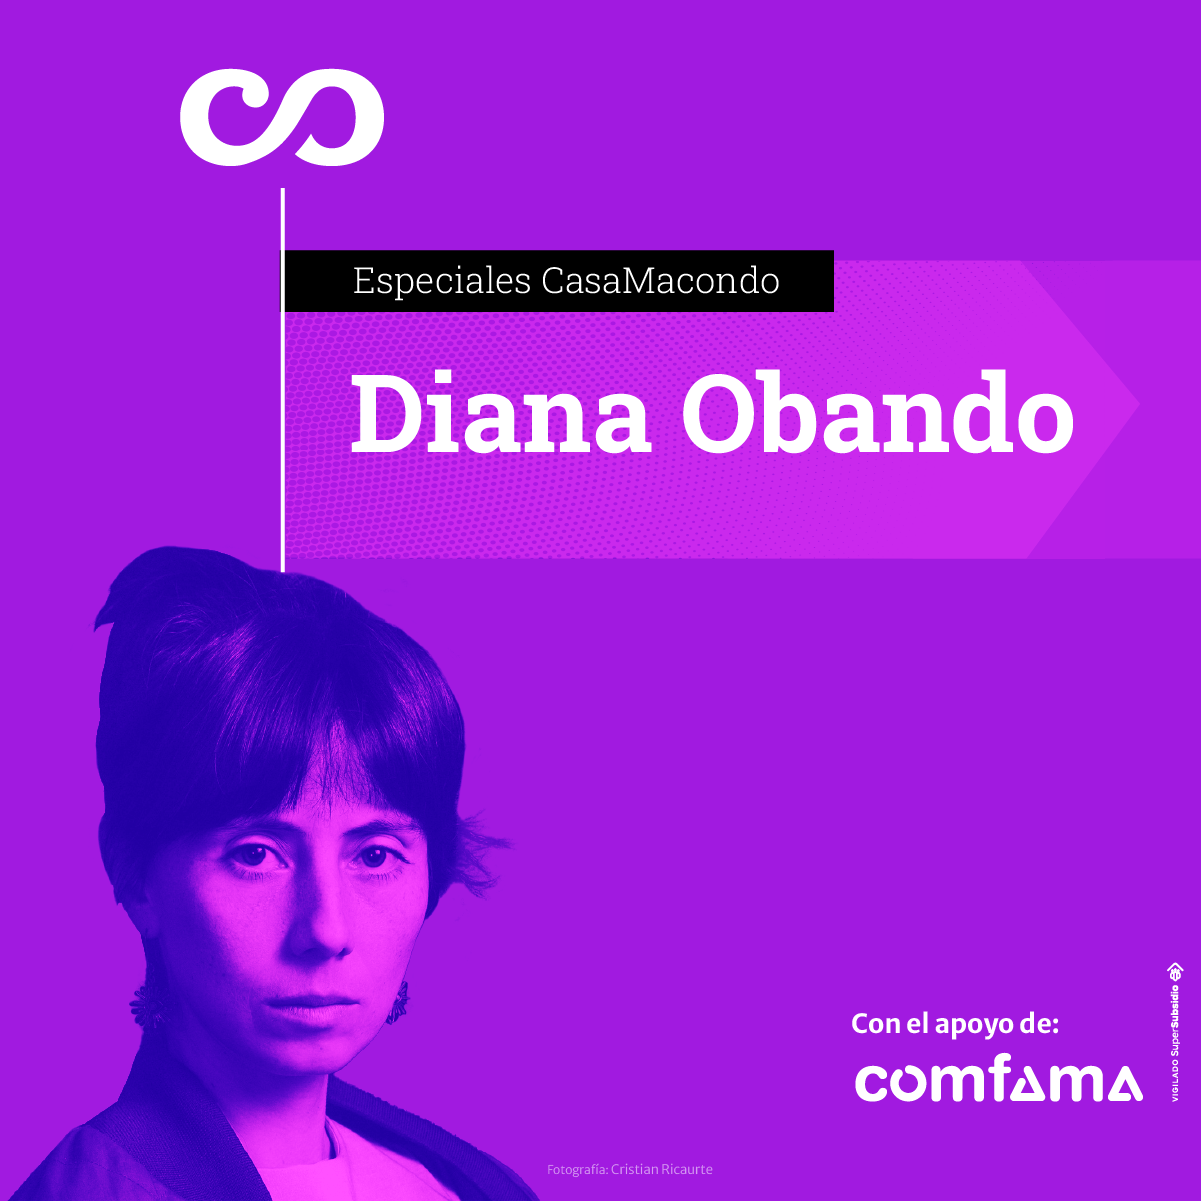 Diana Obando